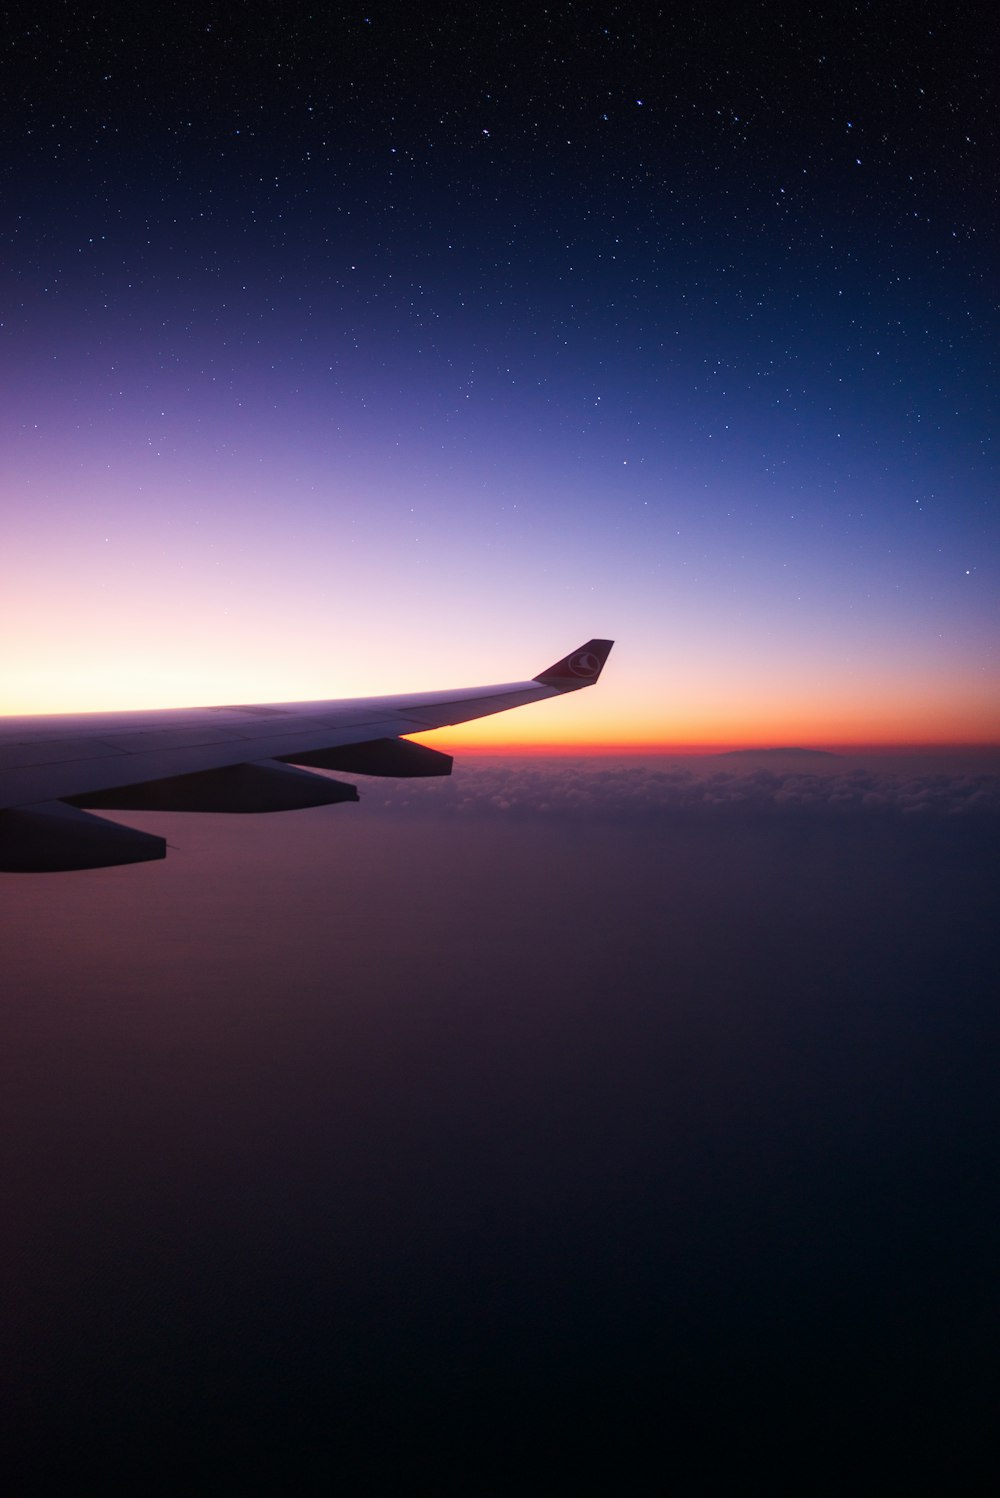 der Flügel eines Flugzeugs bei Sonnenuntergang